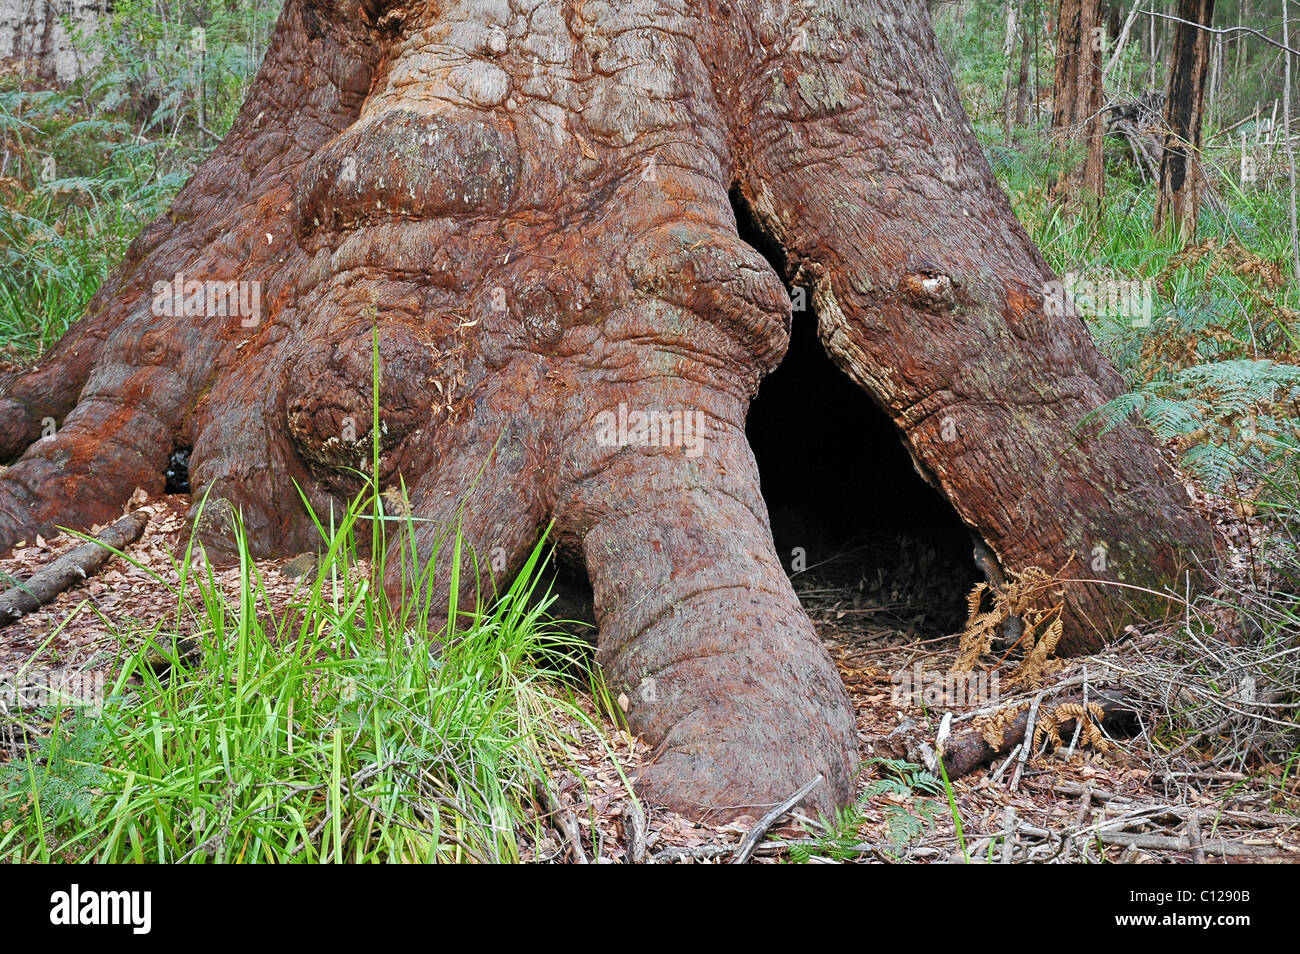 Et l'écorce du tronc de l'arbre Eucalyptus jacksonii, Tingle montrant système racinaire superficiel et l'absence de racine pivotante. Banque D'Images